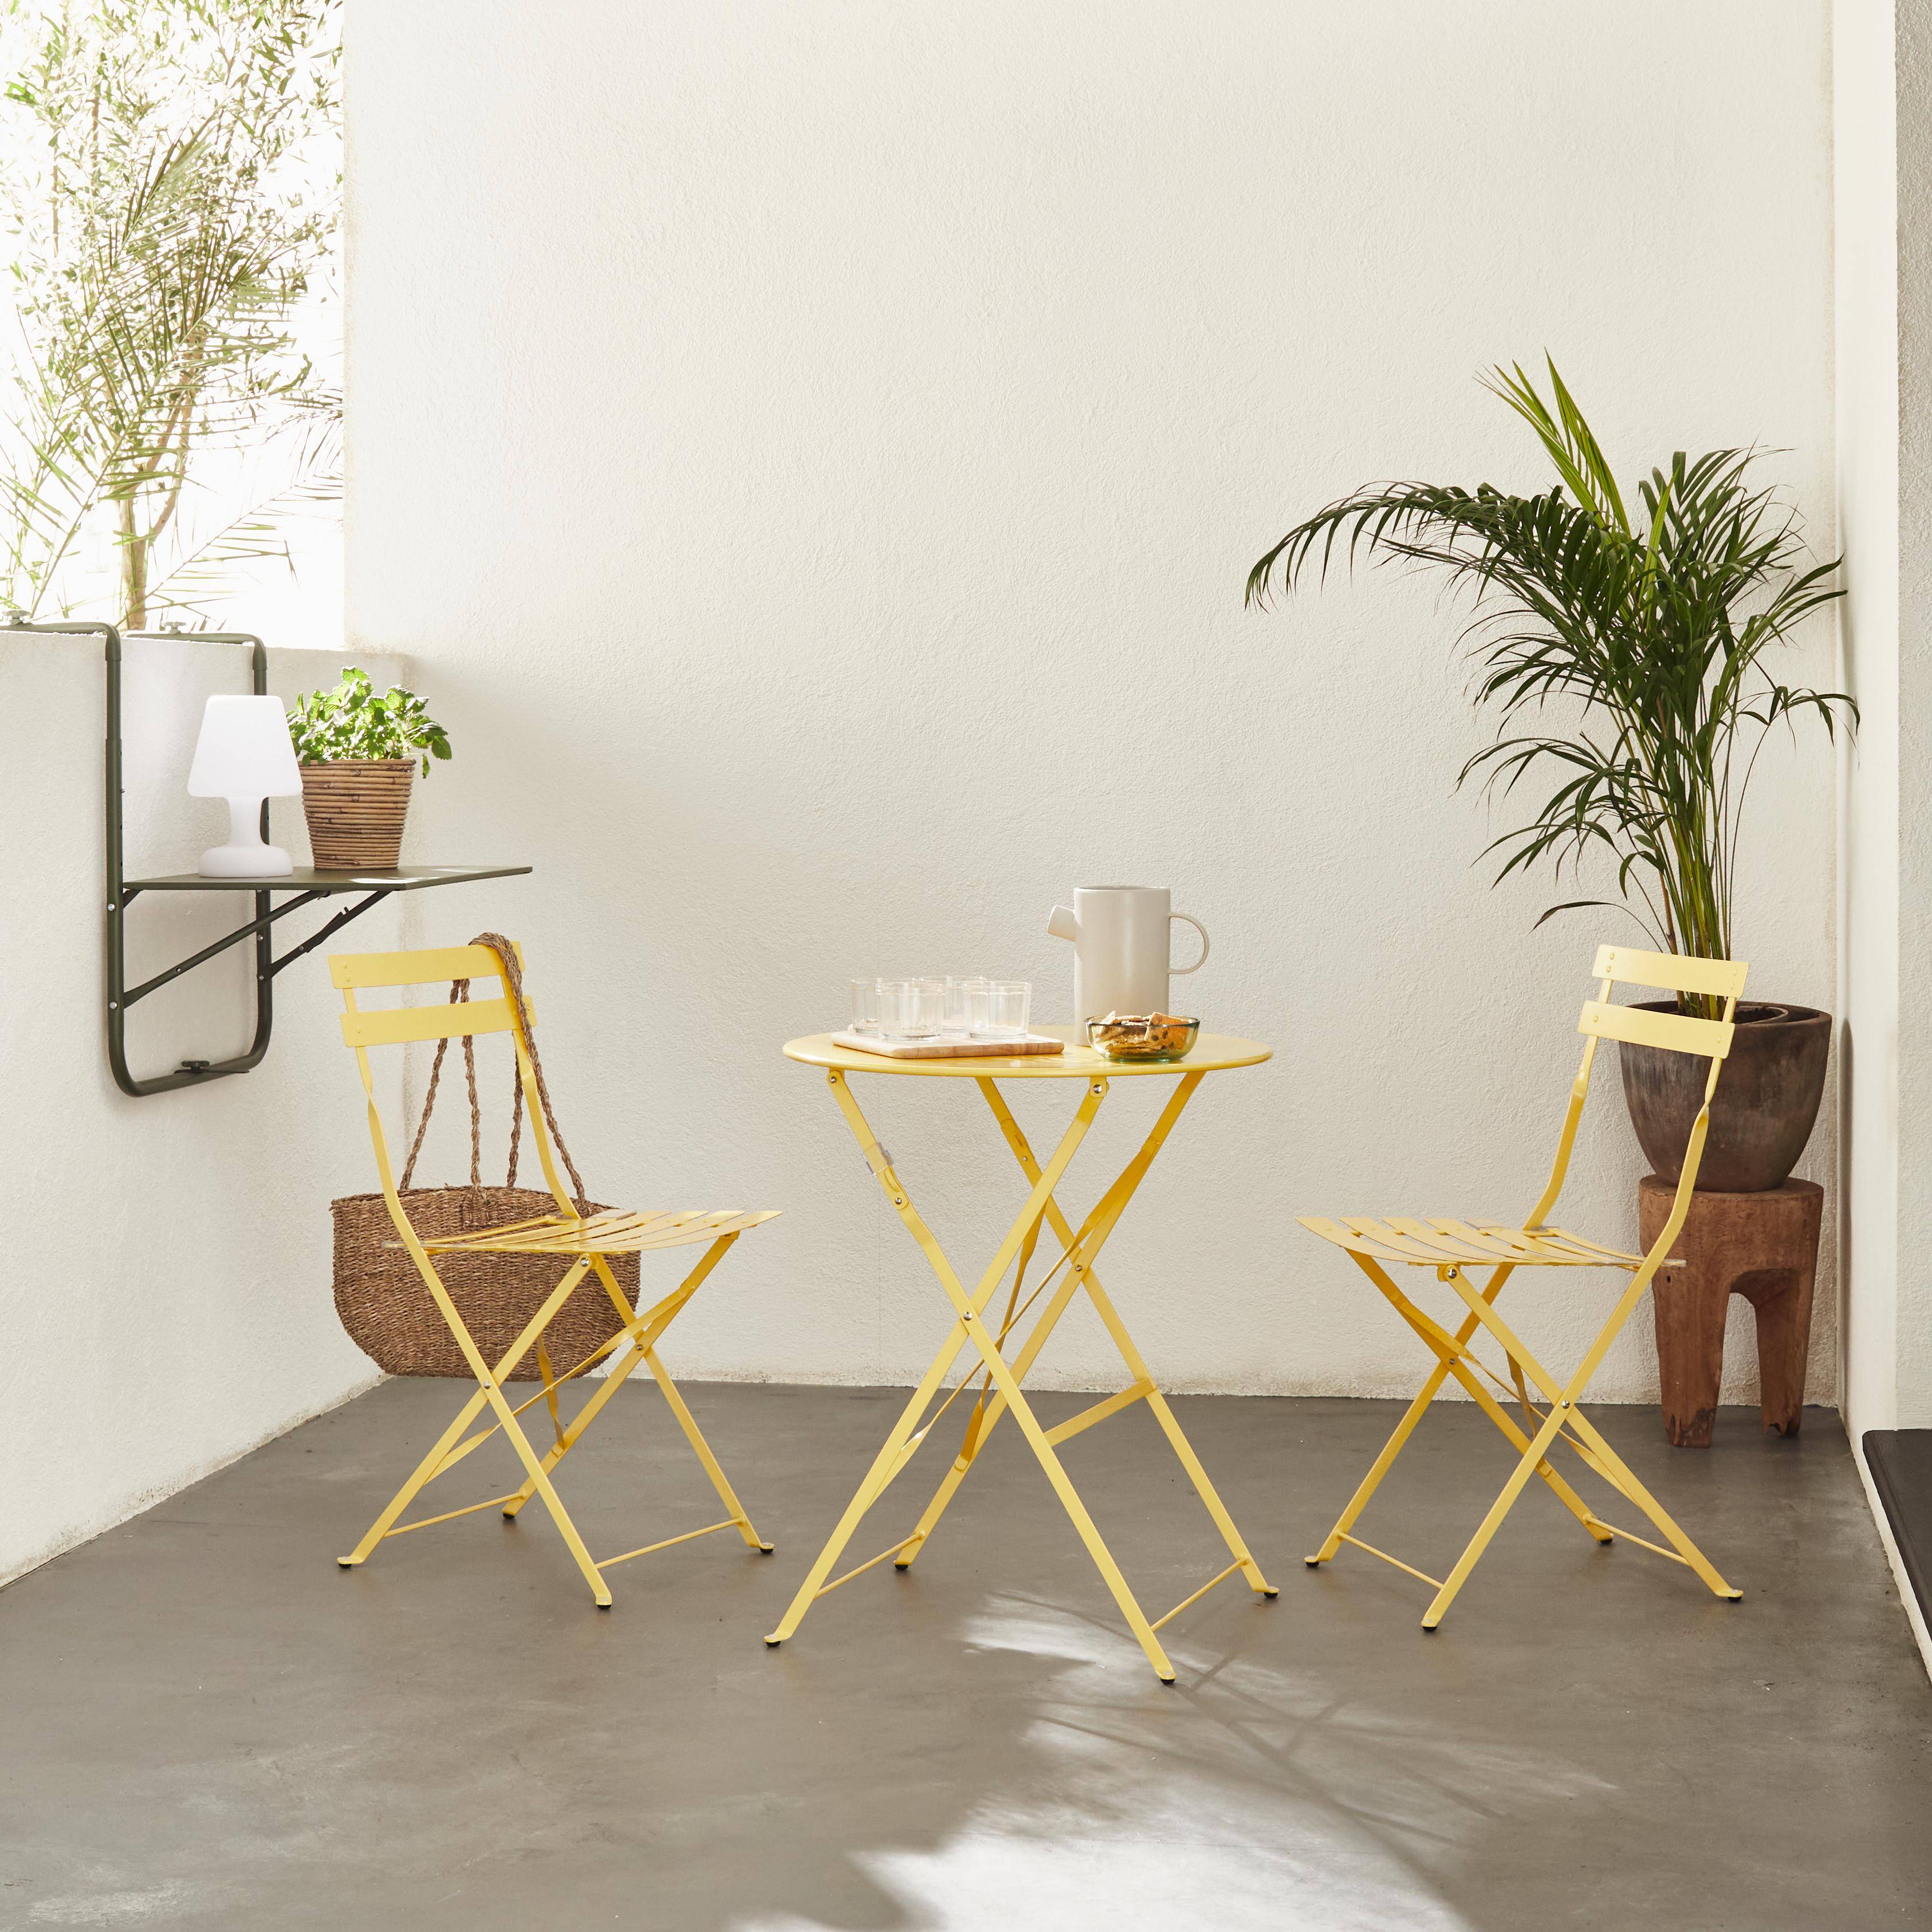 Klappbare Bistro-Gartengarnitur - Emilia rund gelb - Ø60cm Tisch mit zwei Klappstühlen aus pulverbeschichtetem Stahl Photo1